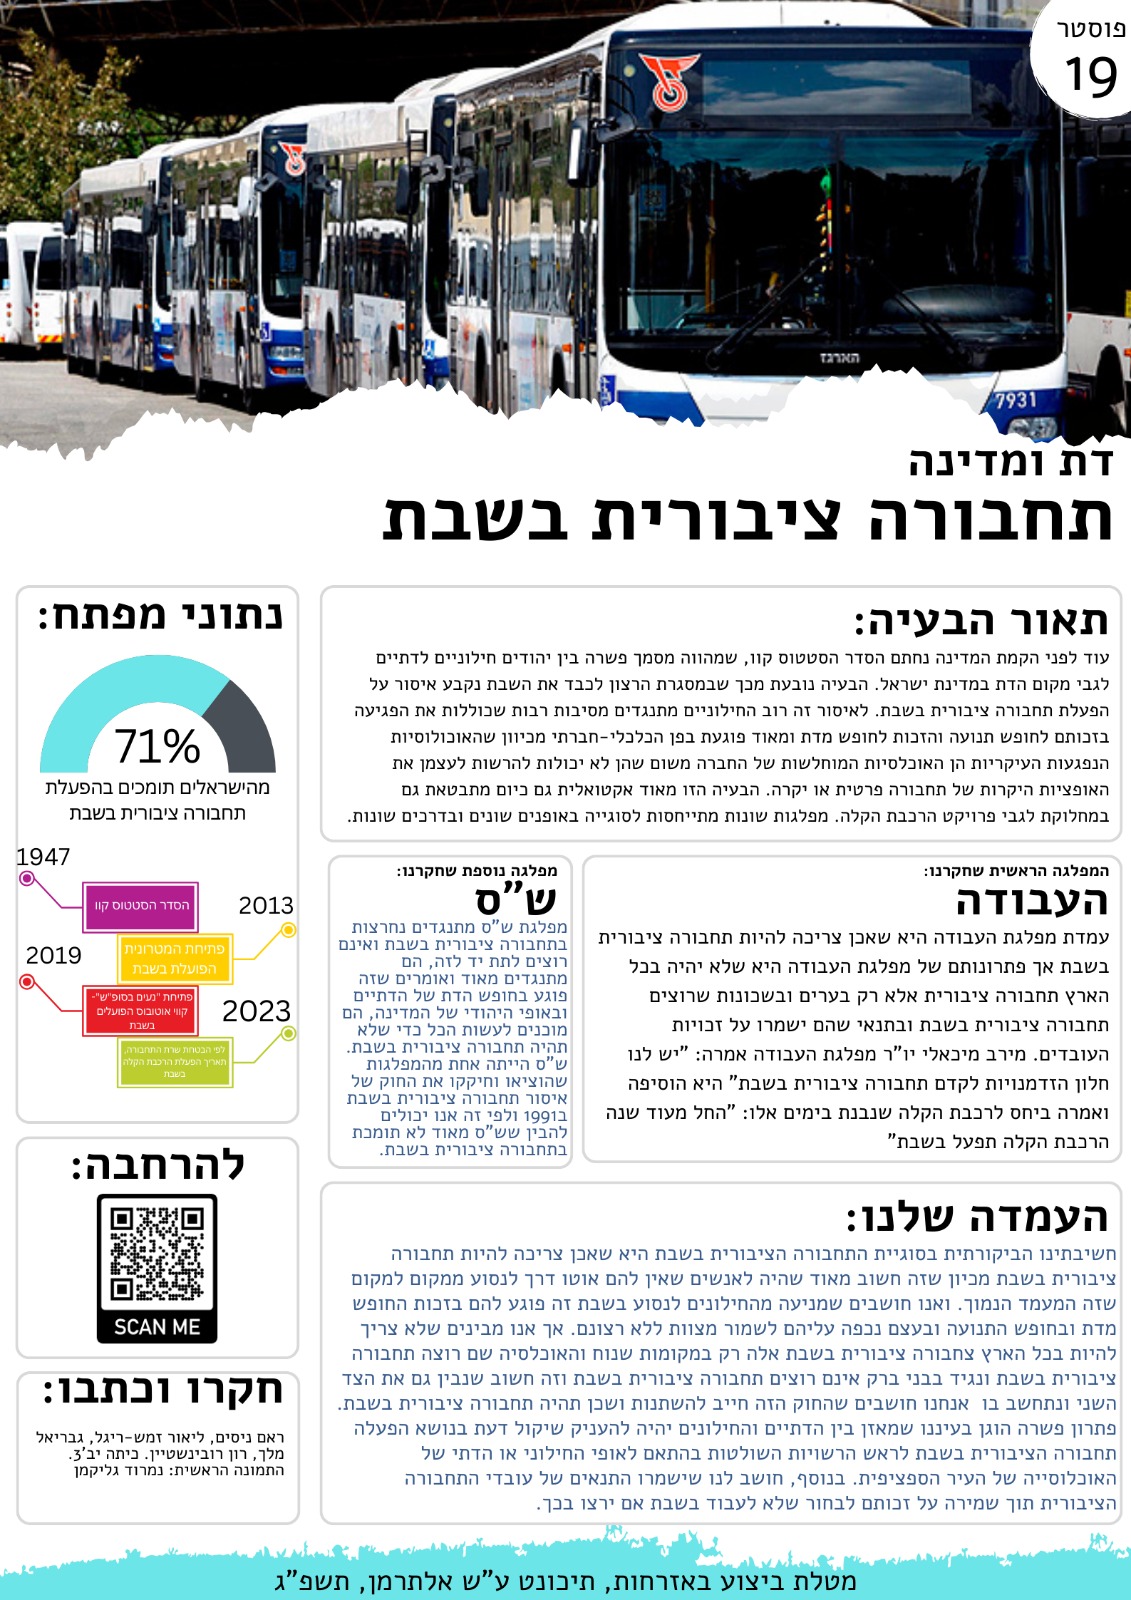 פוסטר עמדות מפלגות בנושא תחבורה ציבורית בשבת, שהכינה קבוצת תלמידים בתיכונט תל אביב